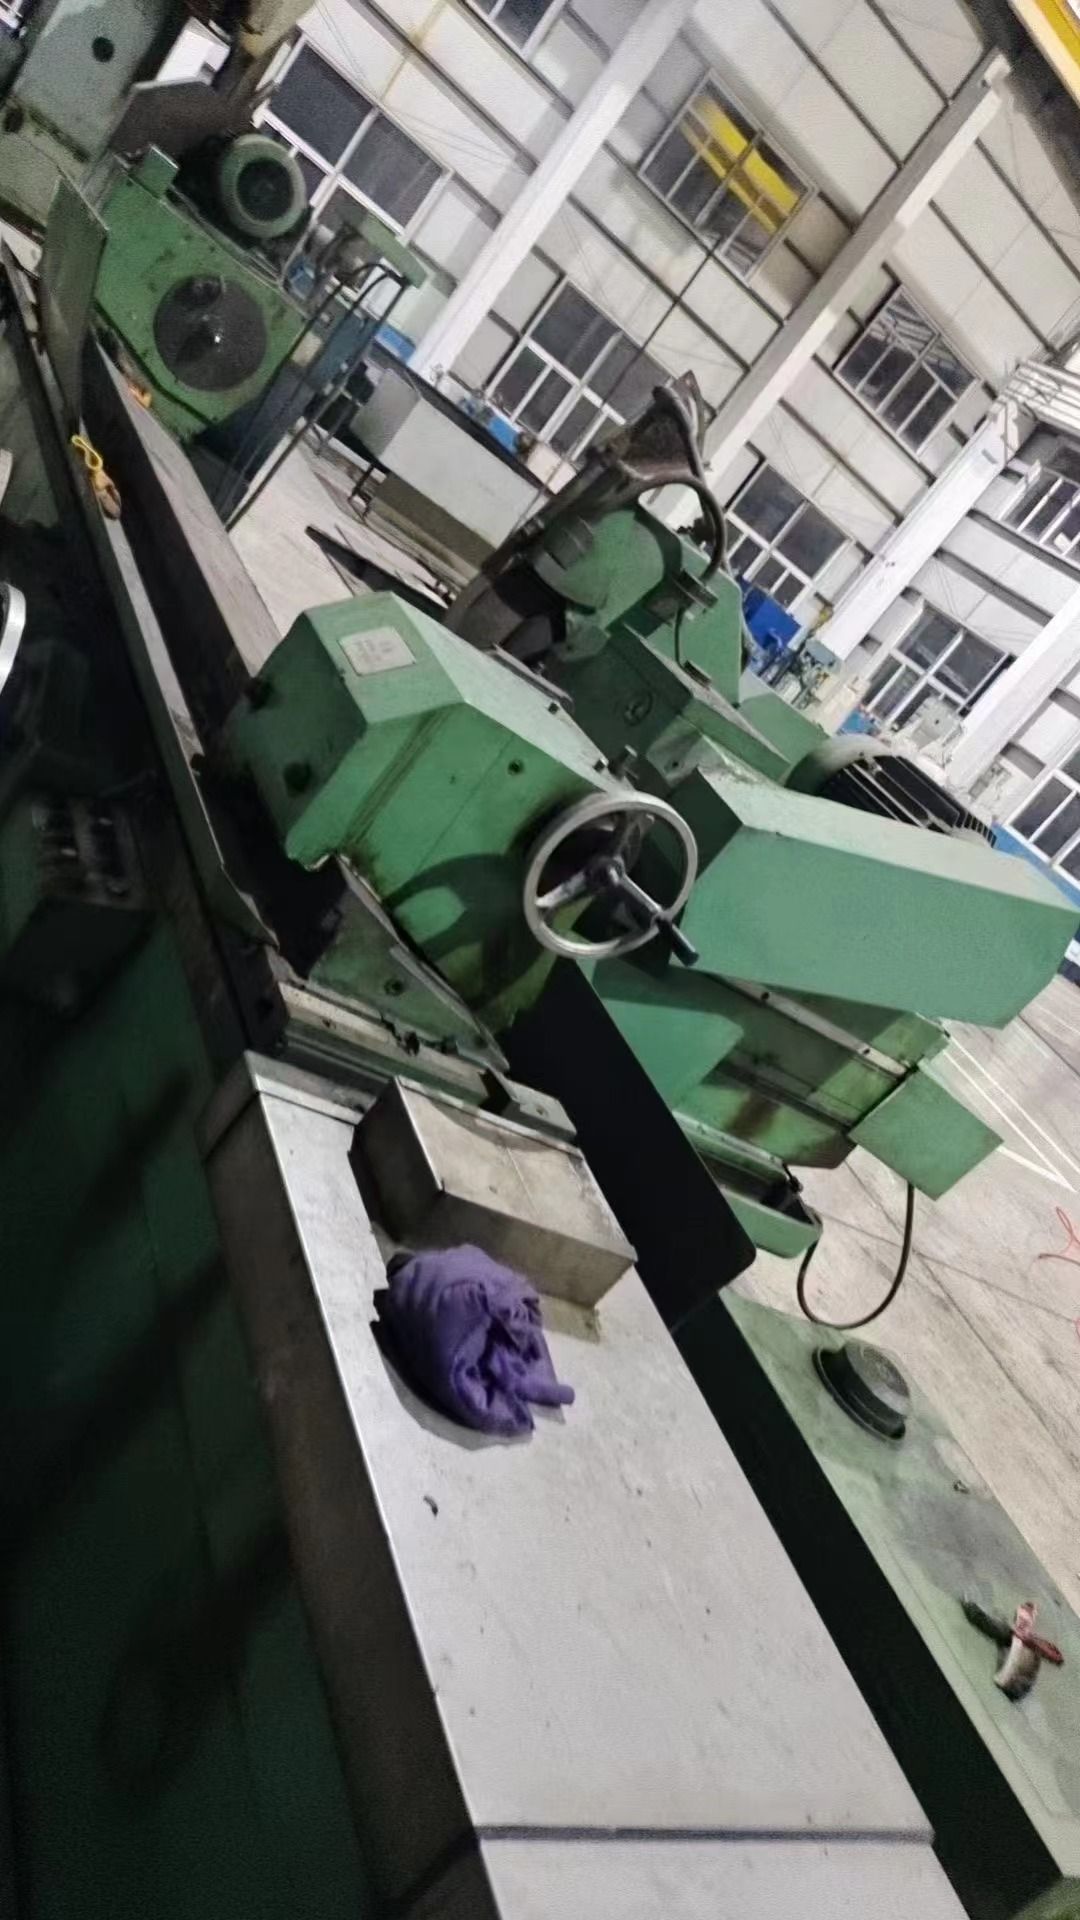 处理二手上海MQ1350B外圆磨床磨削直径25-500